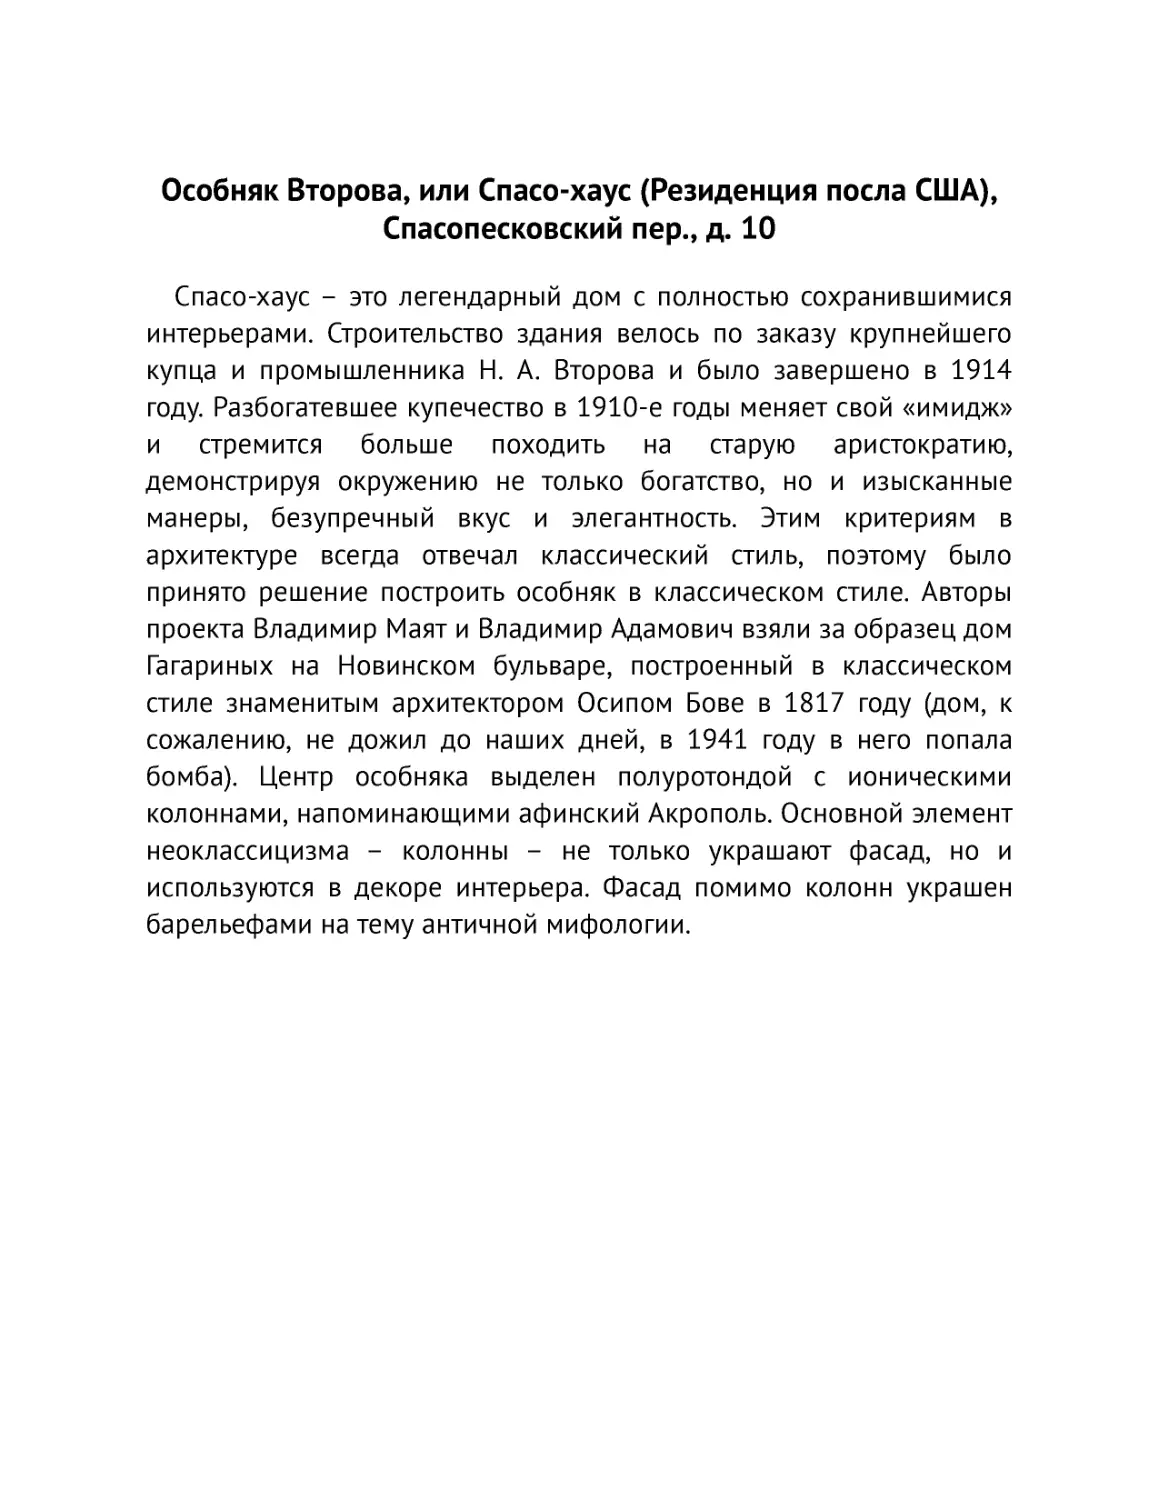 ﻿Особняк Второва, или Спасо-хаус øРезиденция посла СӸАù, Спасопесковский пер., д. 1